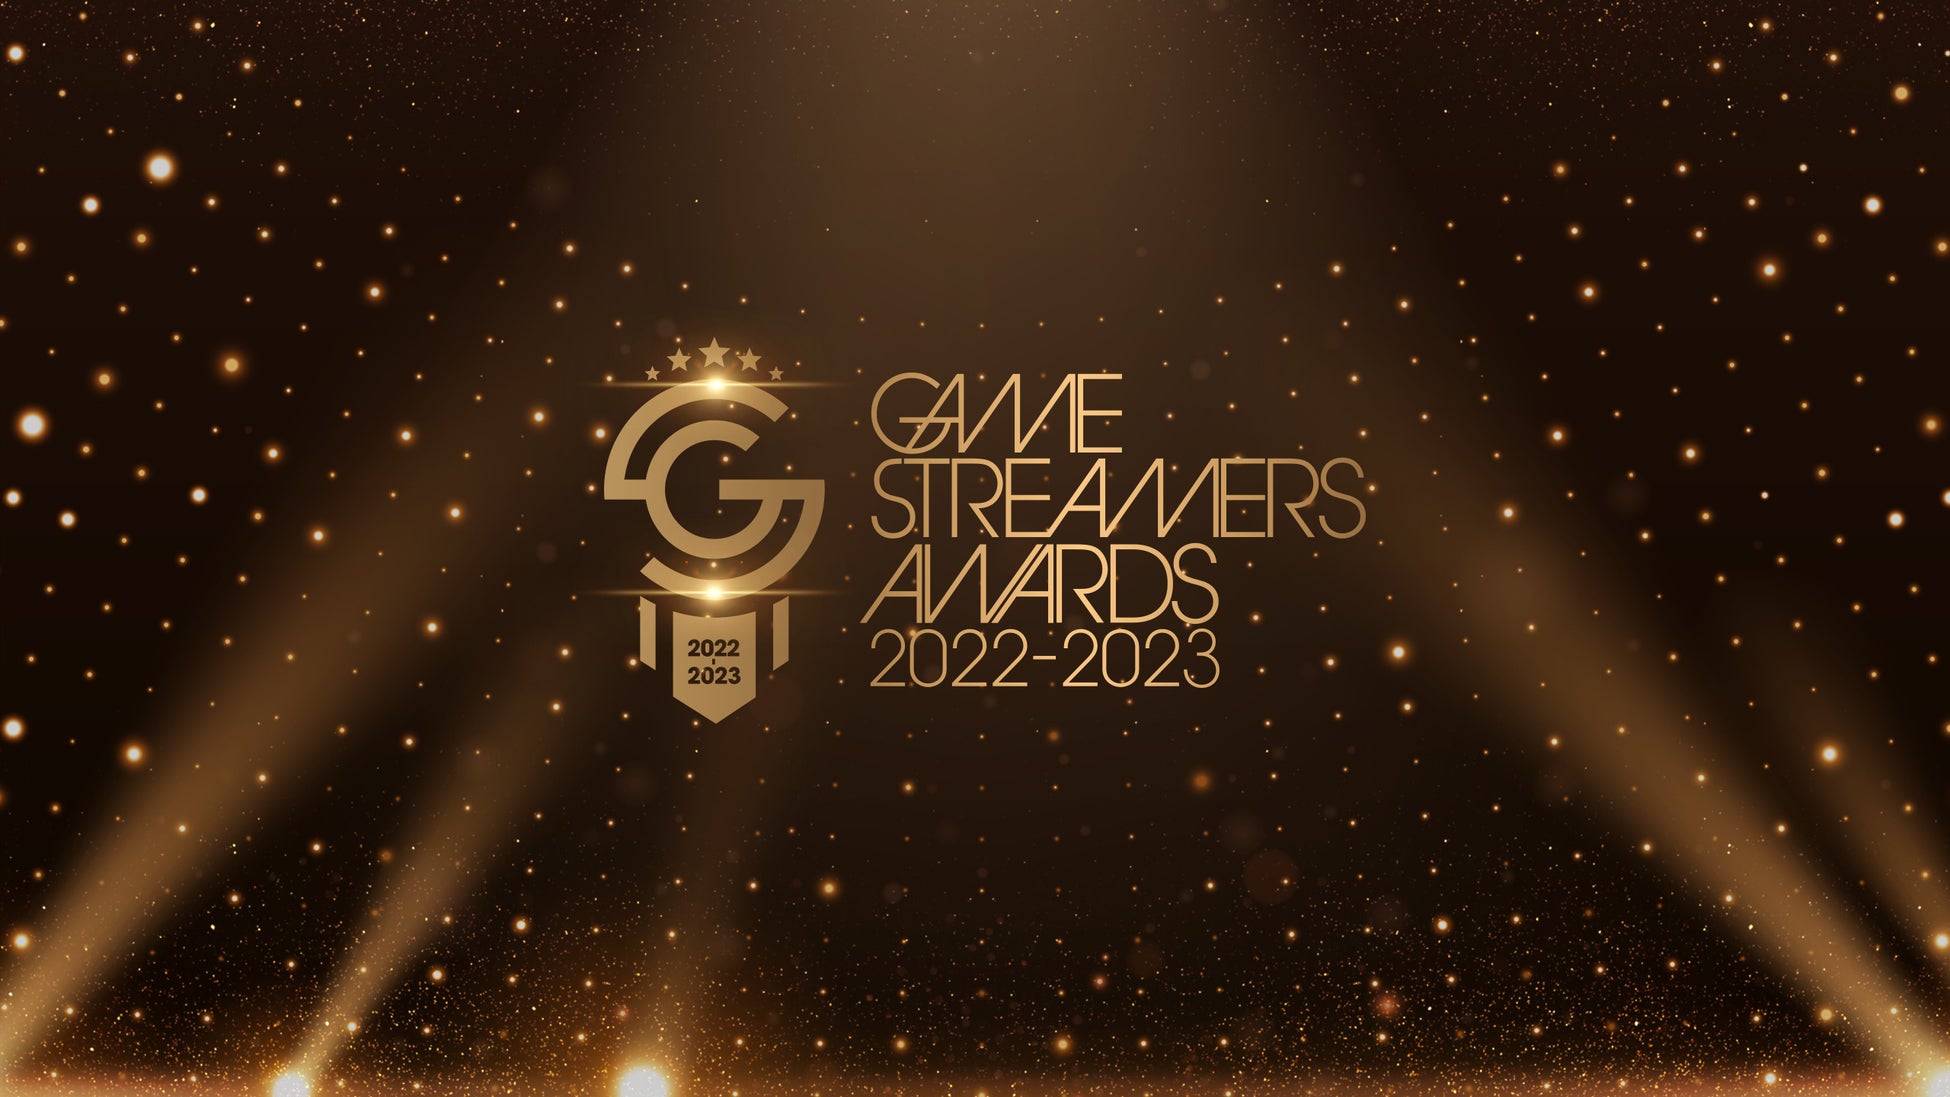 今、最も旬で活躍しているストリーマーを表彰し称える祭典『GAME STREAMERS AWARDS 2022-2023』開催についてのお知らせのサブ画像1